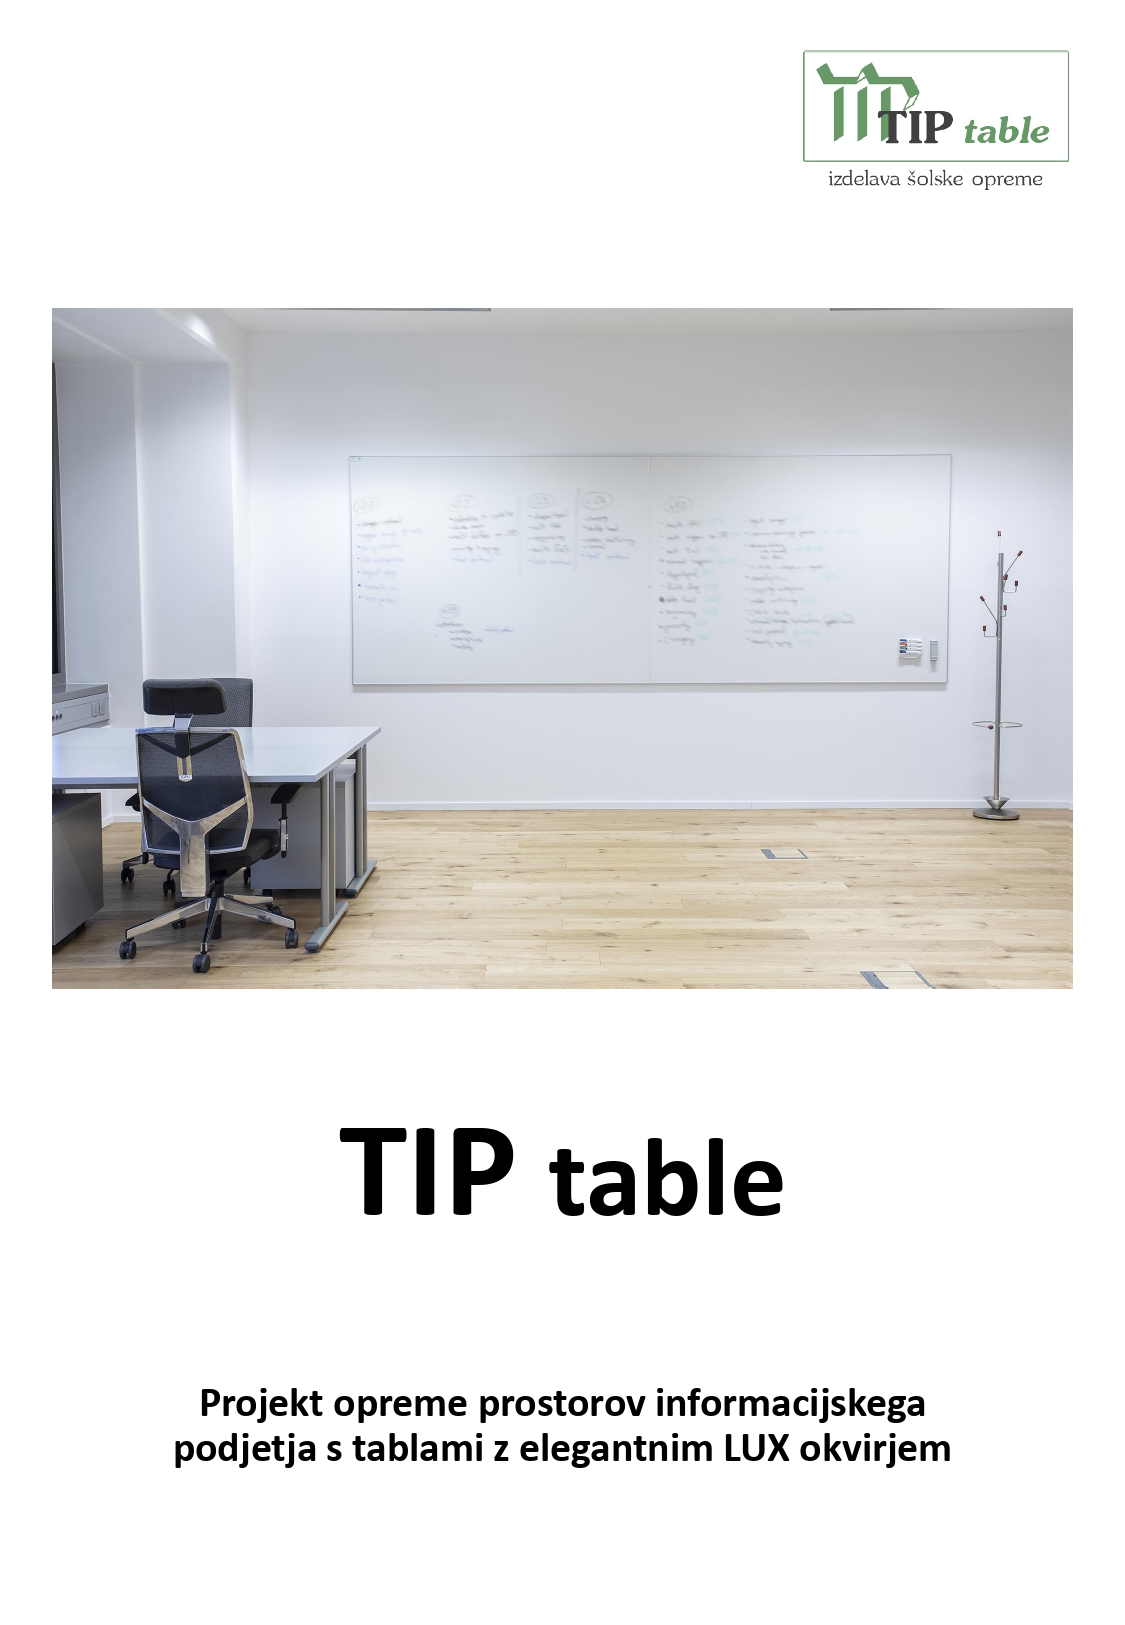 TIP table Projekt oprema informacijskega podjetja LUX table 1